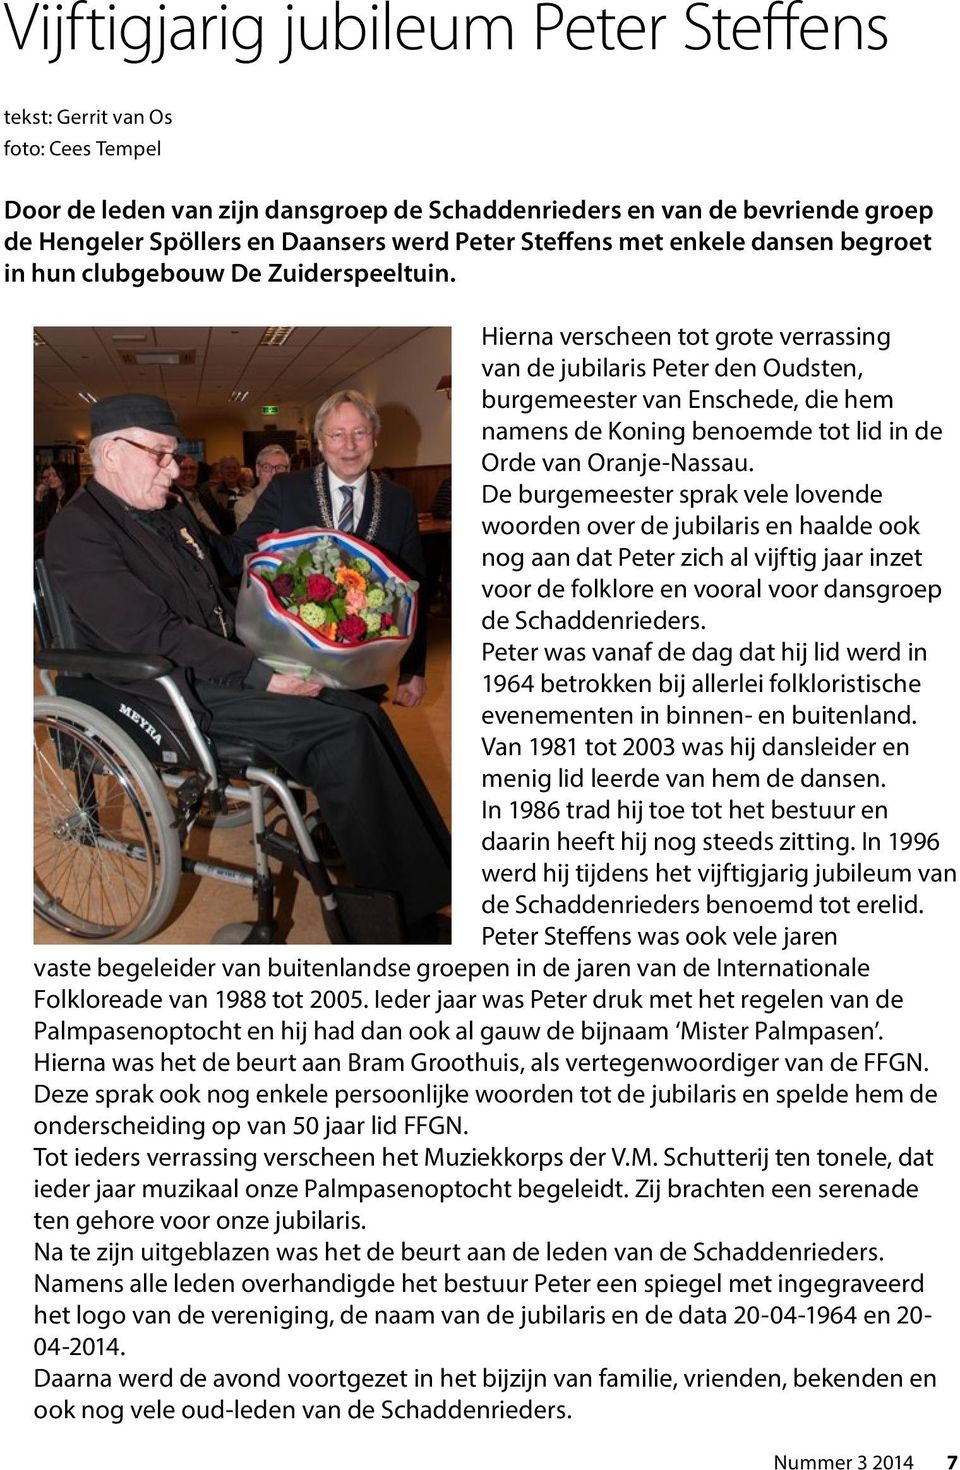 Hierna verscheen tot grote verrassing van de jubilaris Peter den Oudsten, burgemeester van Enschede, die hem namens de Koning benoemde tot lid in de Orde van Oranje-Nassau.